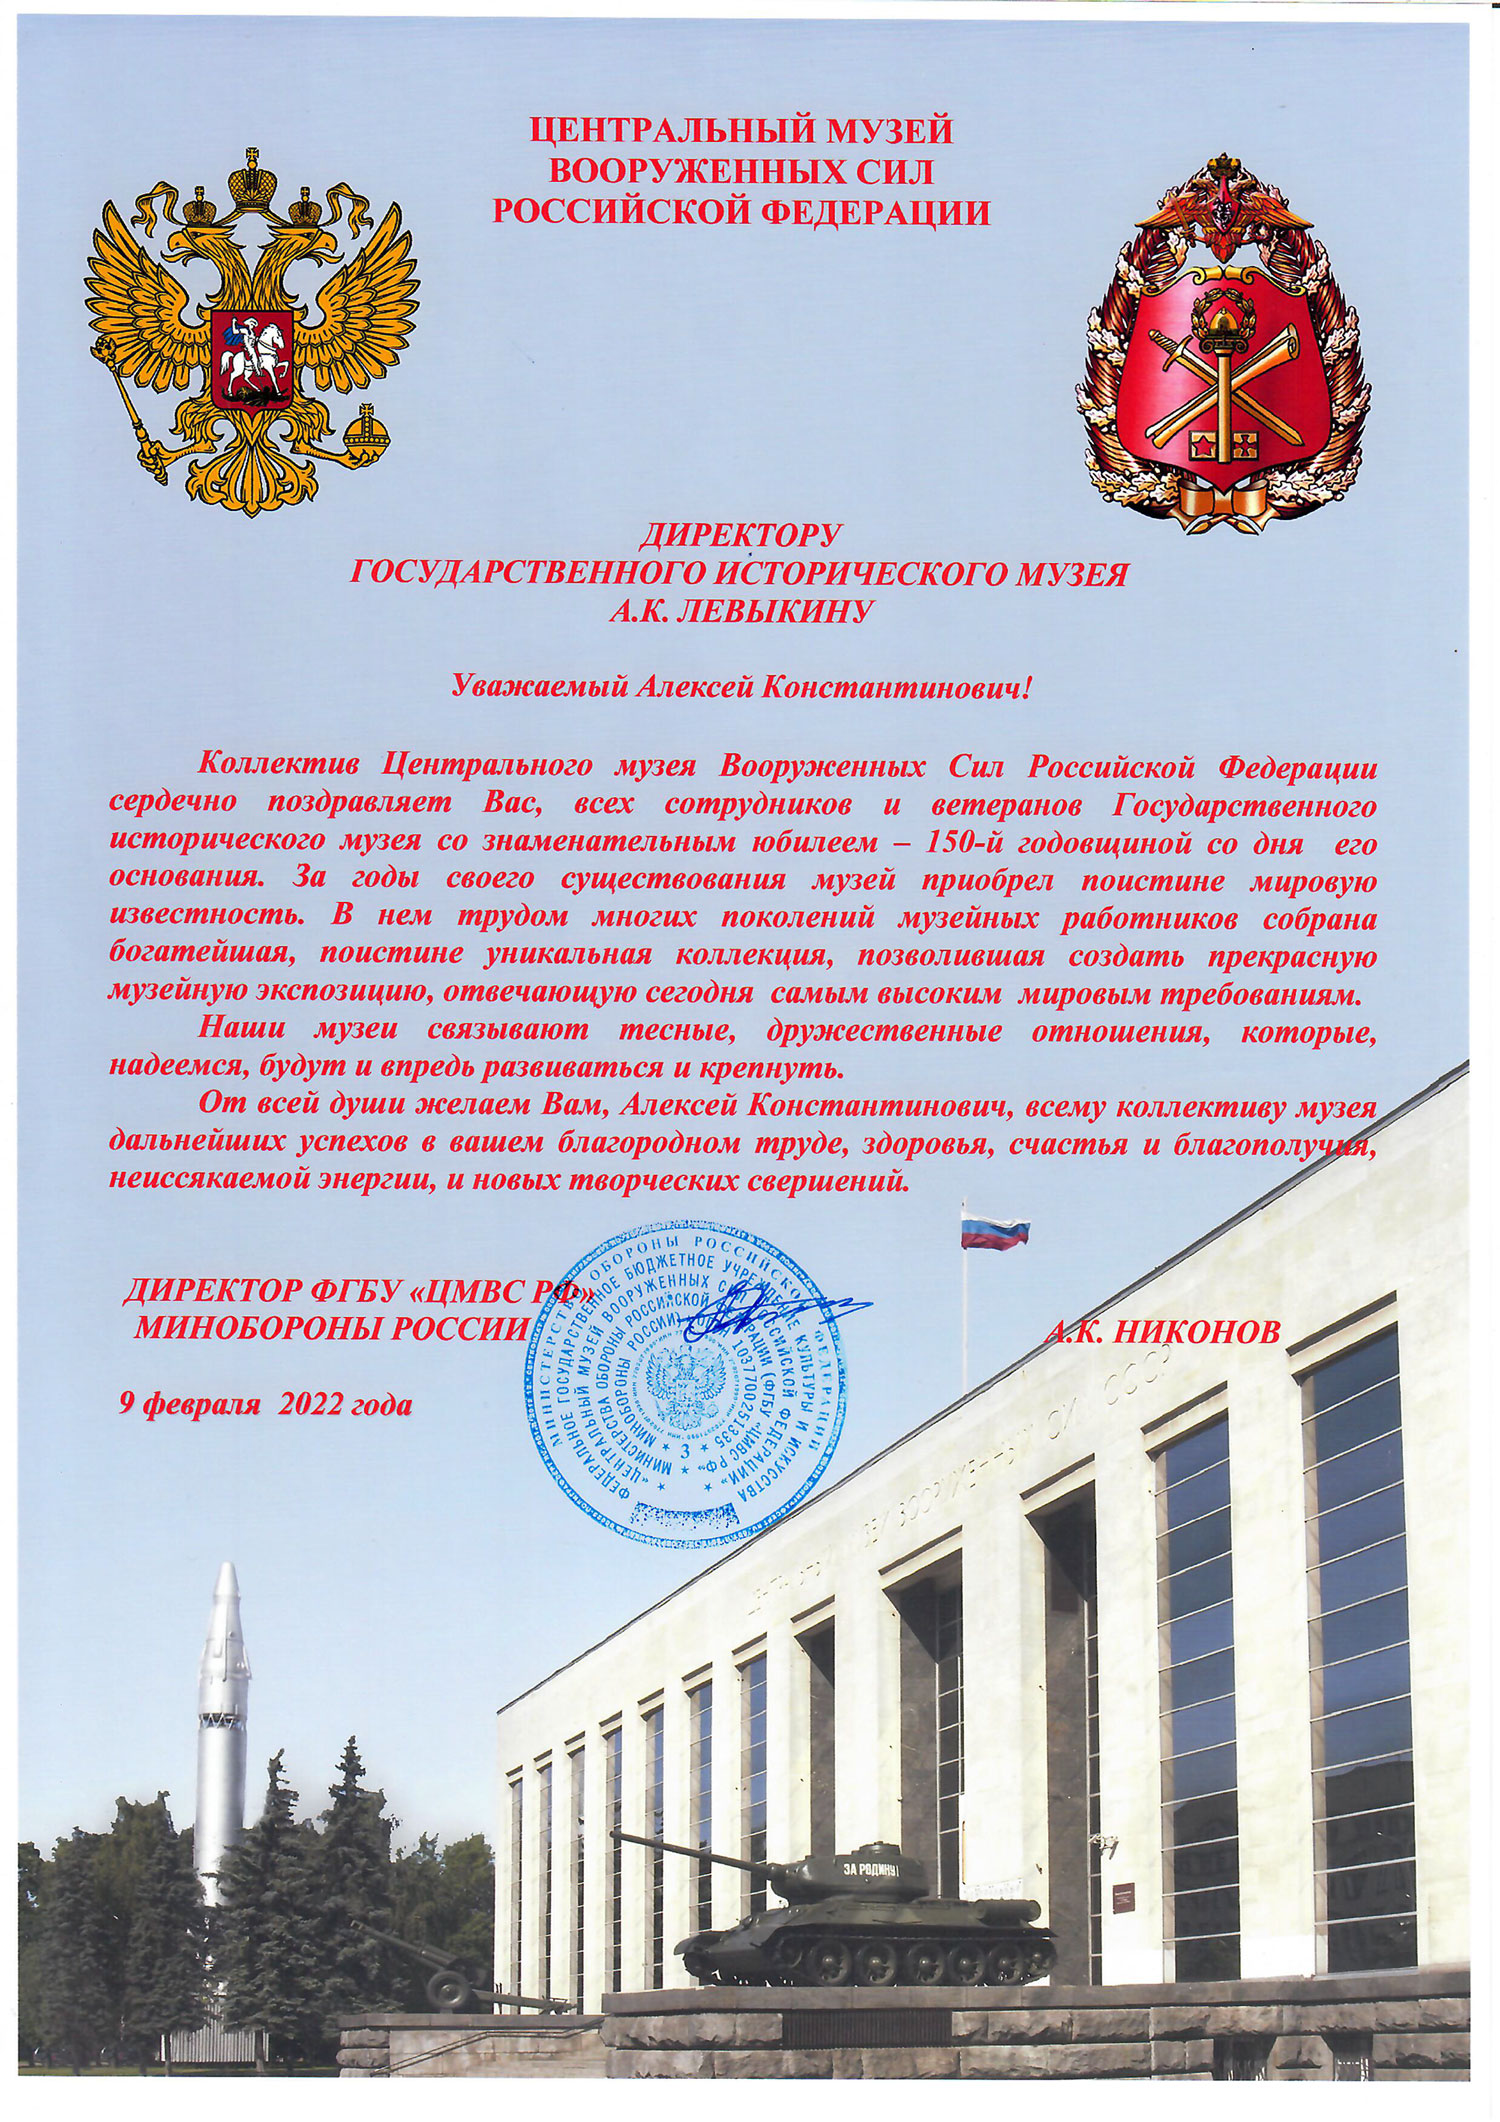 Письмо от директора Центрального музея Вооруженных Сил РФ Никонова А. К.